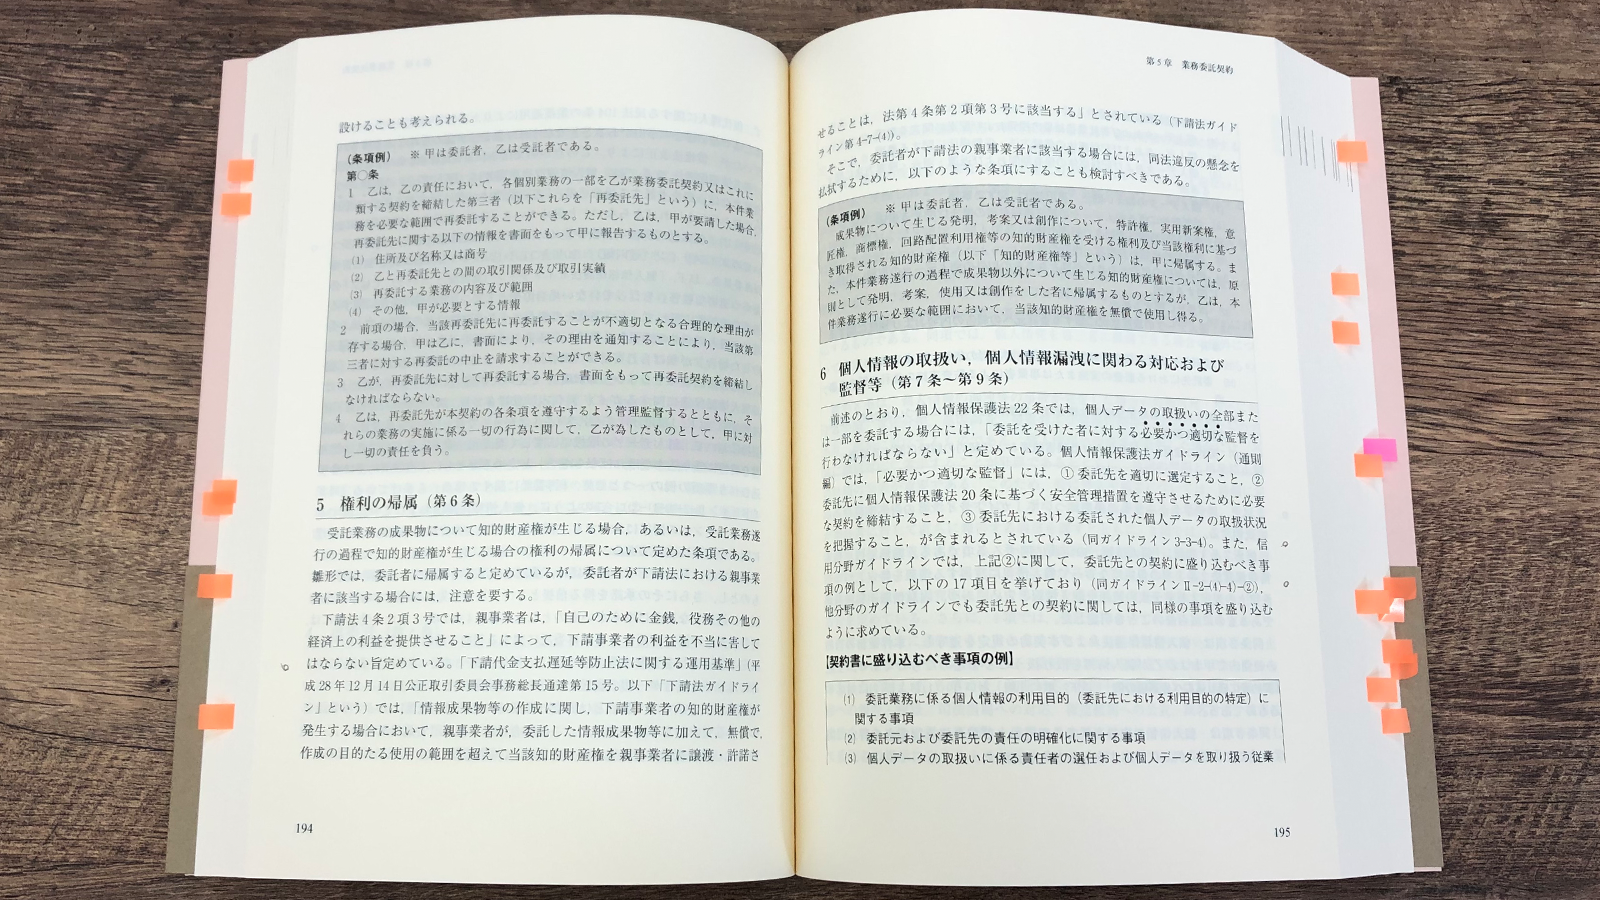 阿部・井窪・片山法律事務所『契約書作成の実務と書式 第2版』P194-195